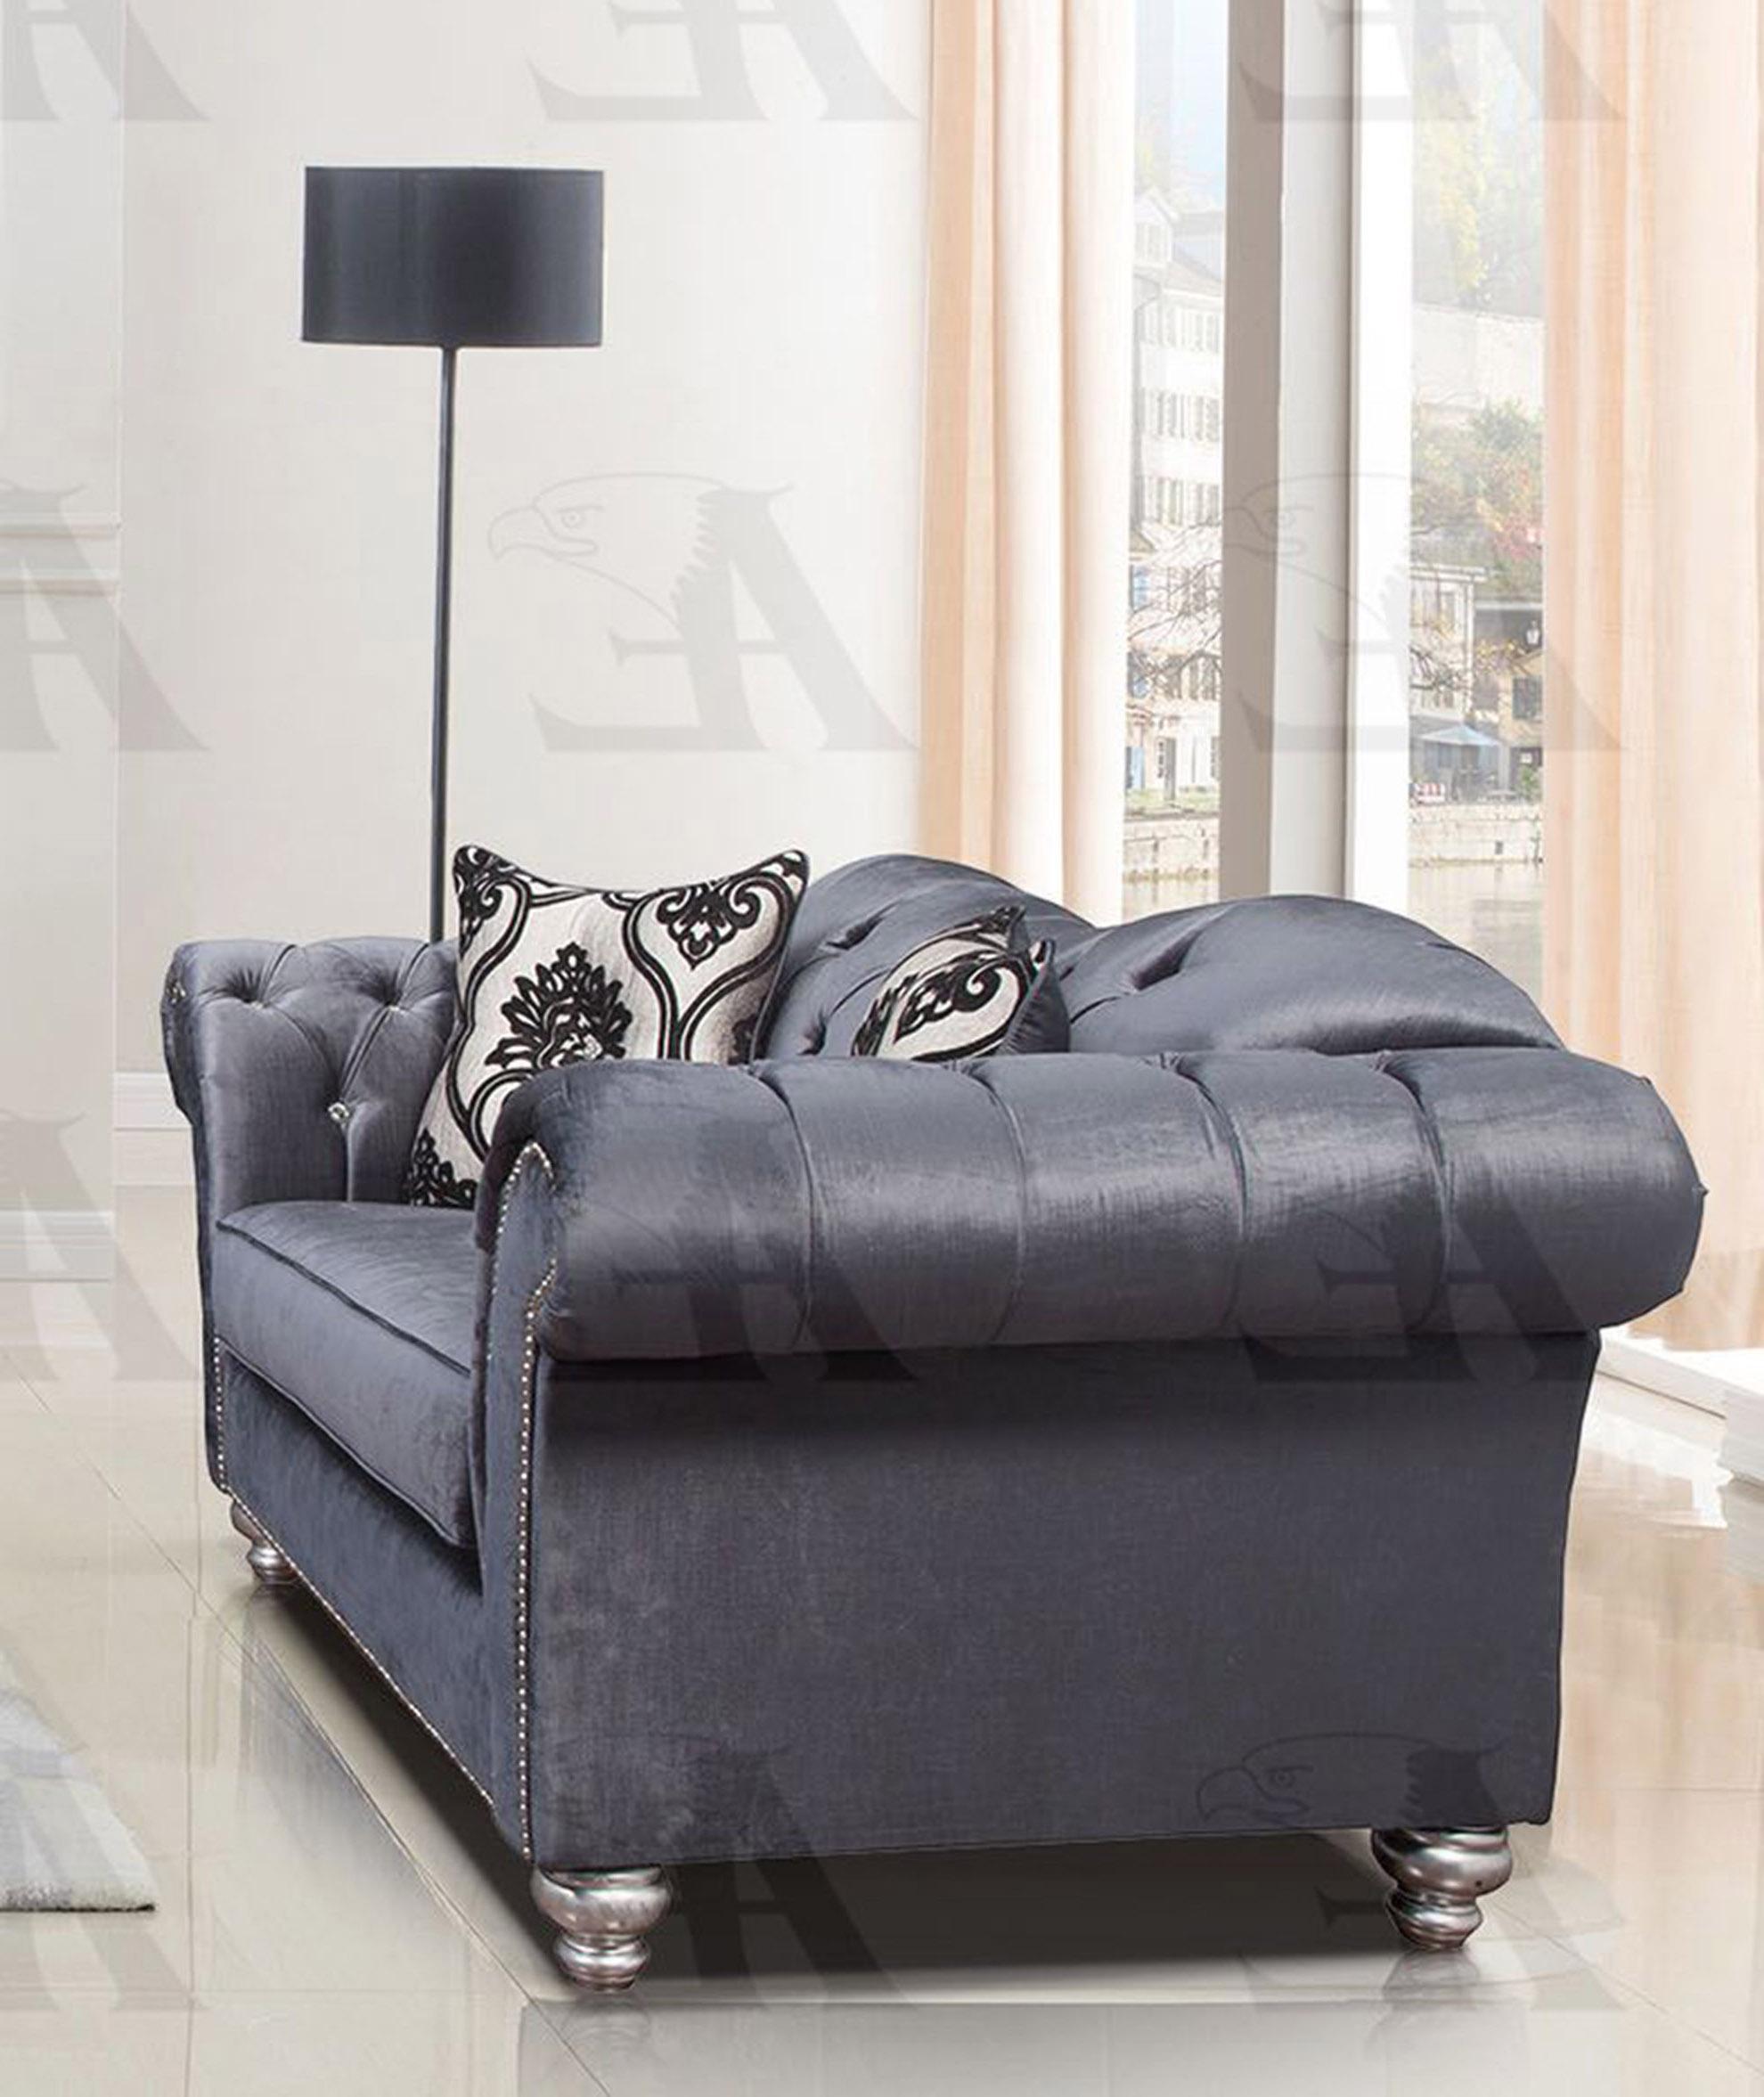 

                    
American Eagle Furniture AE2600-GB Sofa Blue Fabric Purchase 
